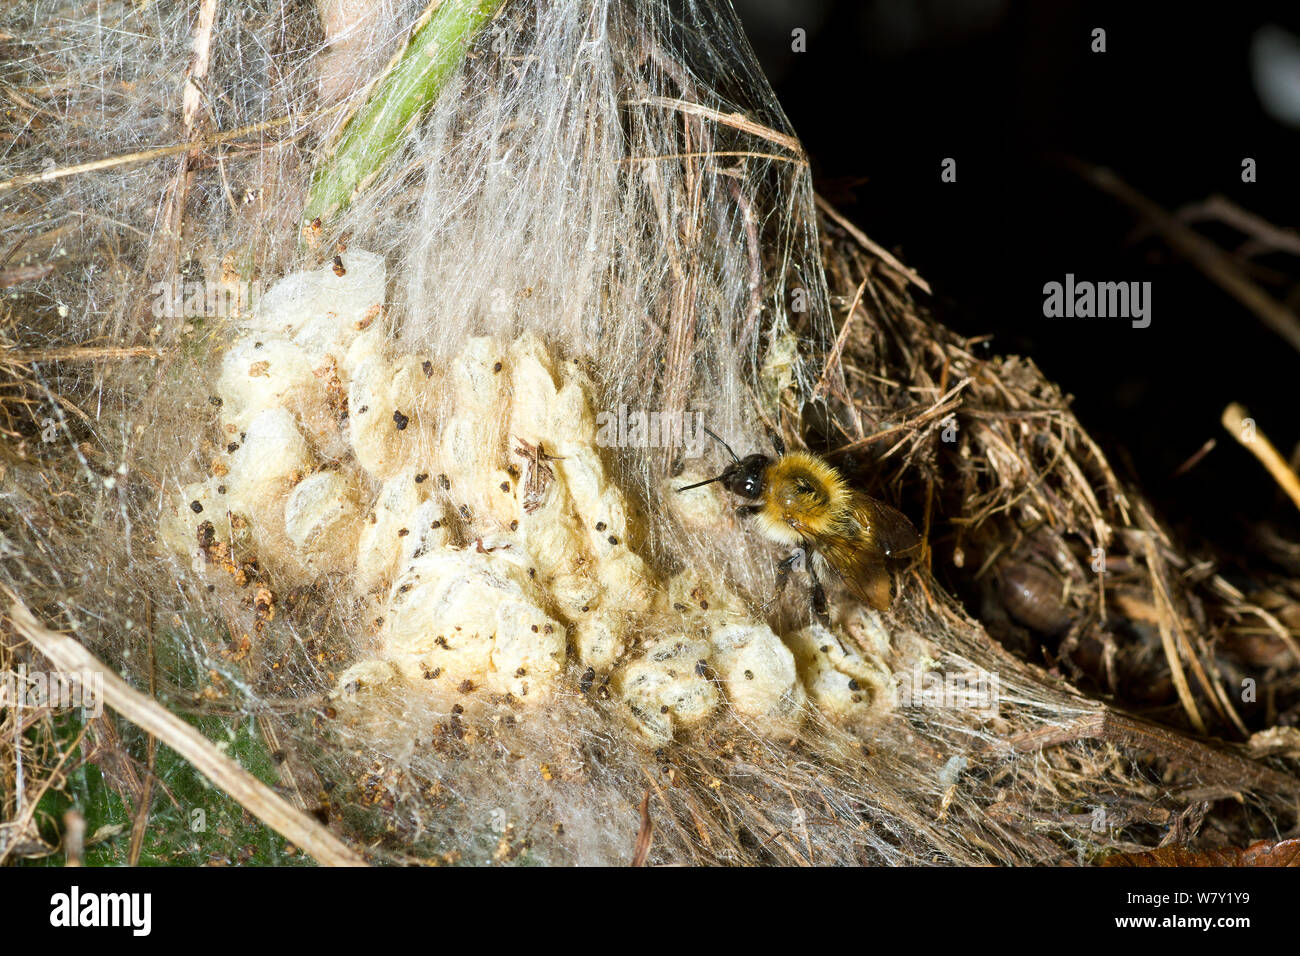 Les bourdons (Bombus hypnorum arbre) de monter sur nid de soie produite par les papillons de cire (Galleriinae) dans un vieux bird&# 39;s nest, jardin haie, Somerset, Royaume-Uni, août. Banque D'Images